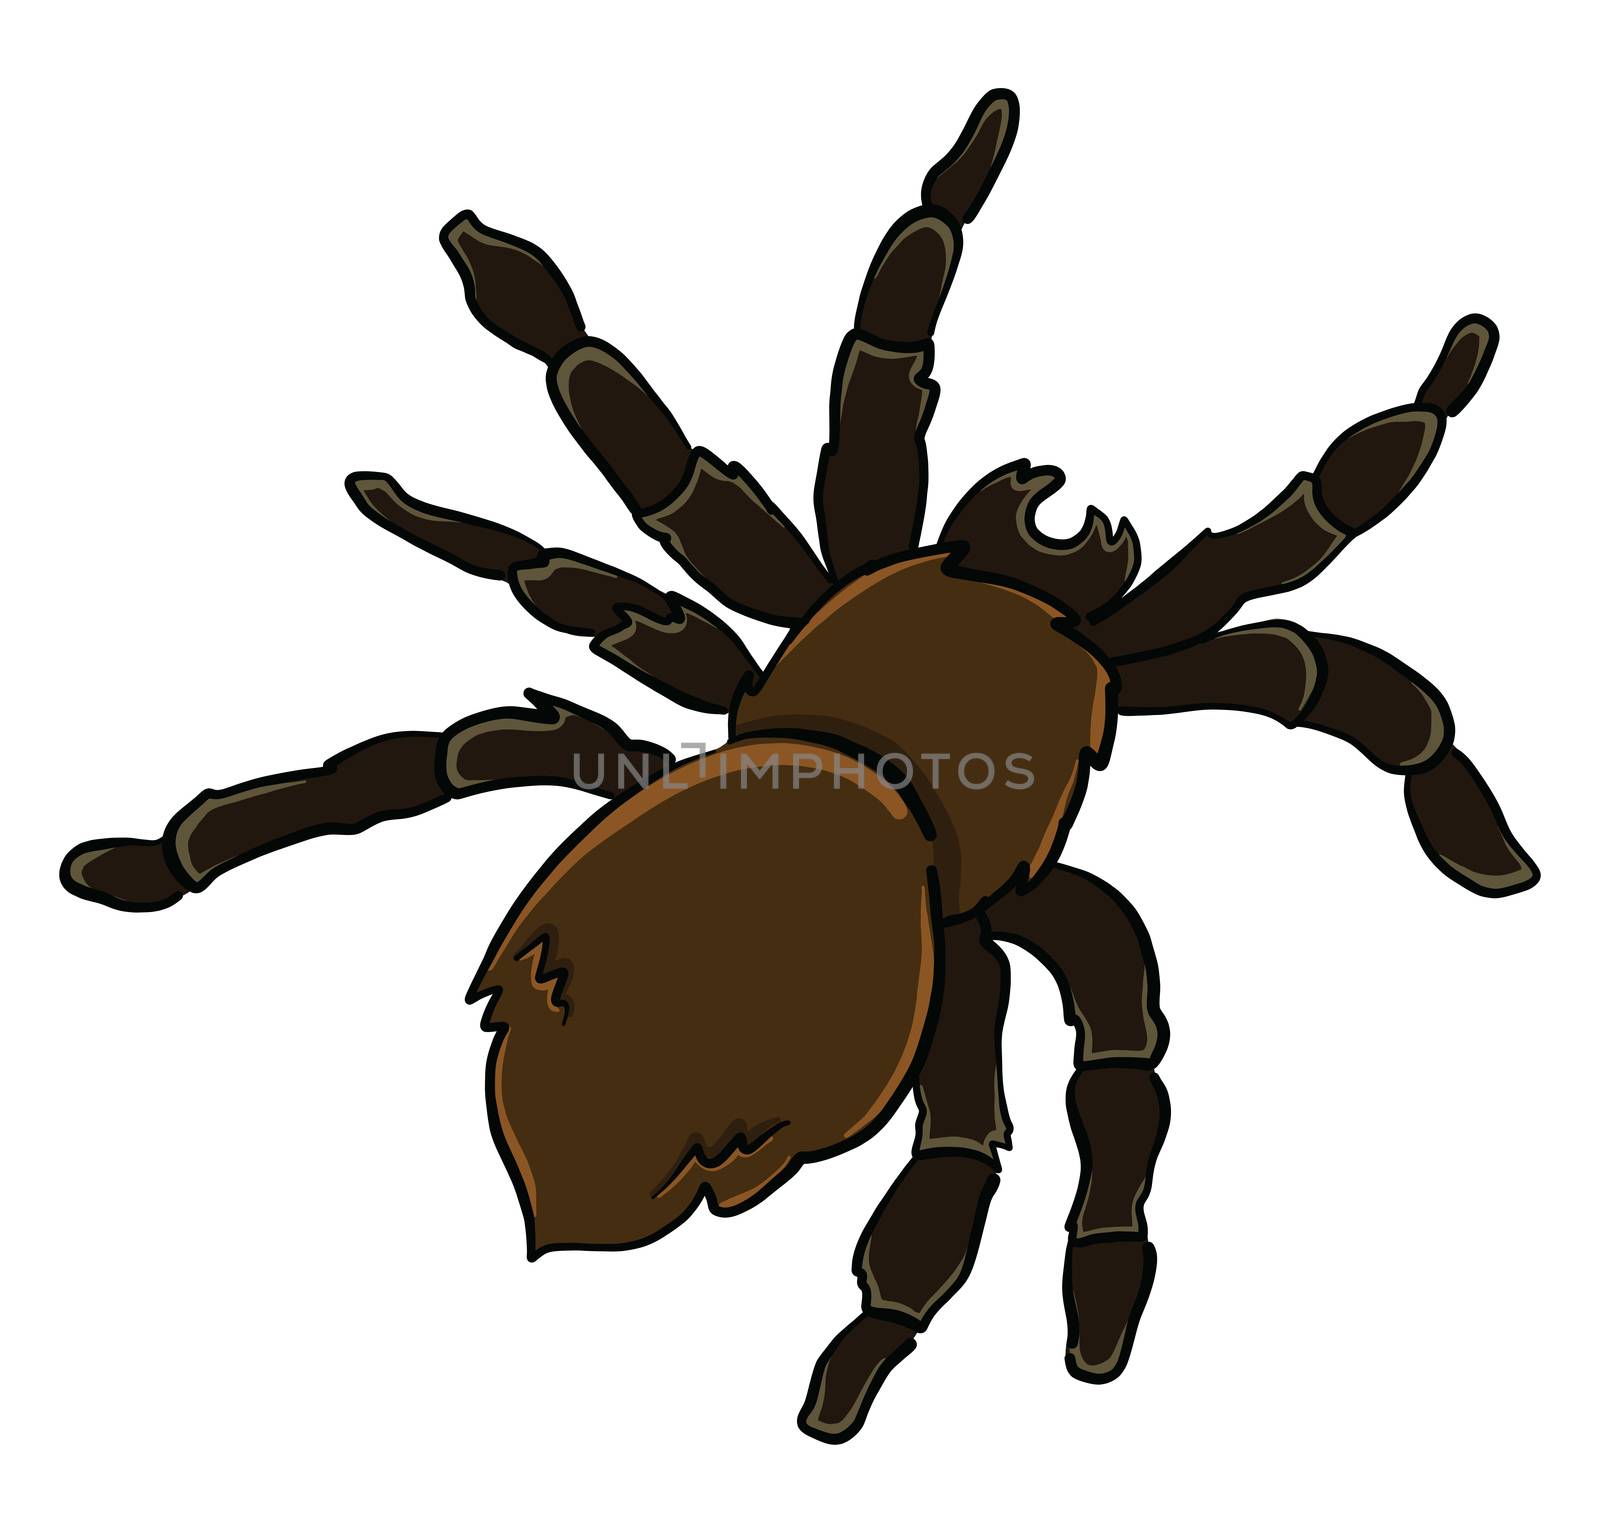 Black spider , illustration, vector on white background